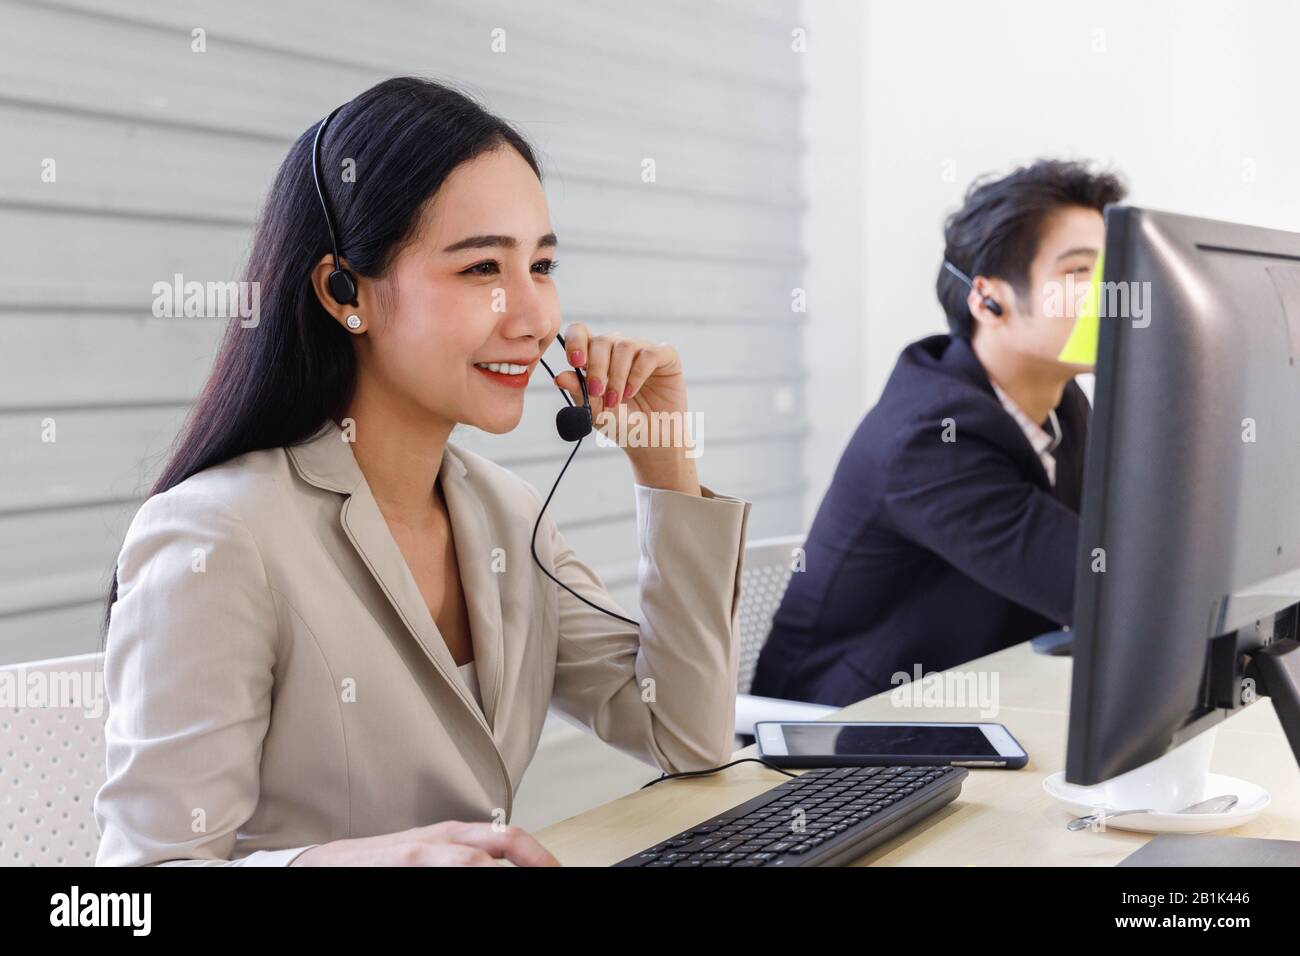 Lächelnder asiatischer Callcenter-Betreiber arbeitet im Büro und spricht mit dem Kunden. Stockfoto